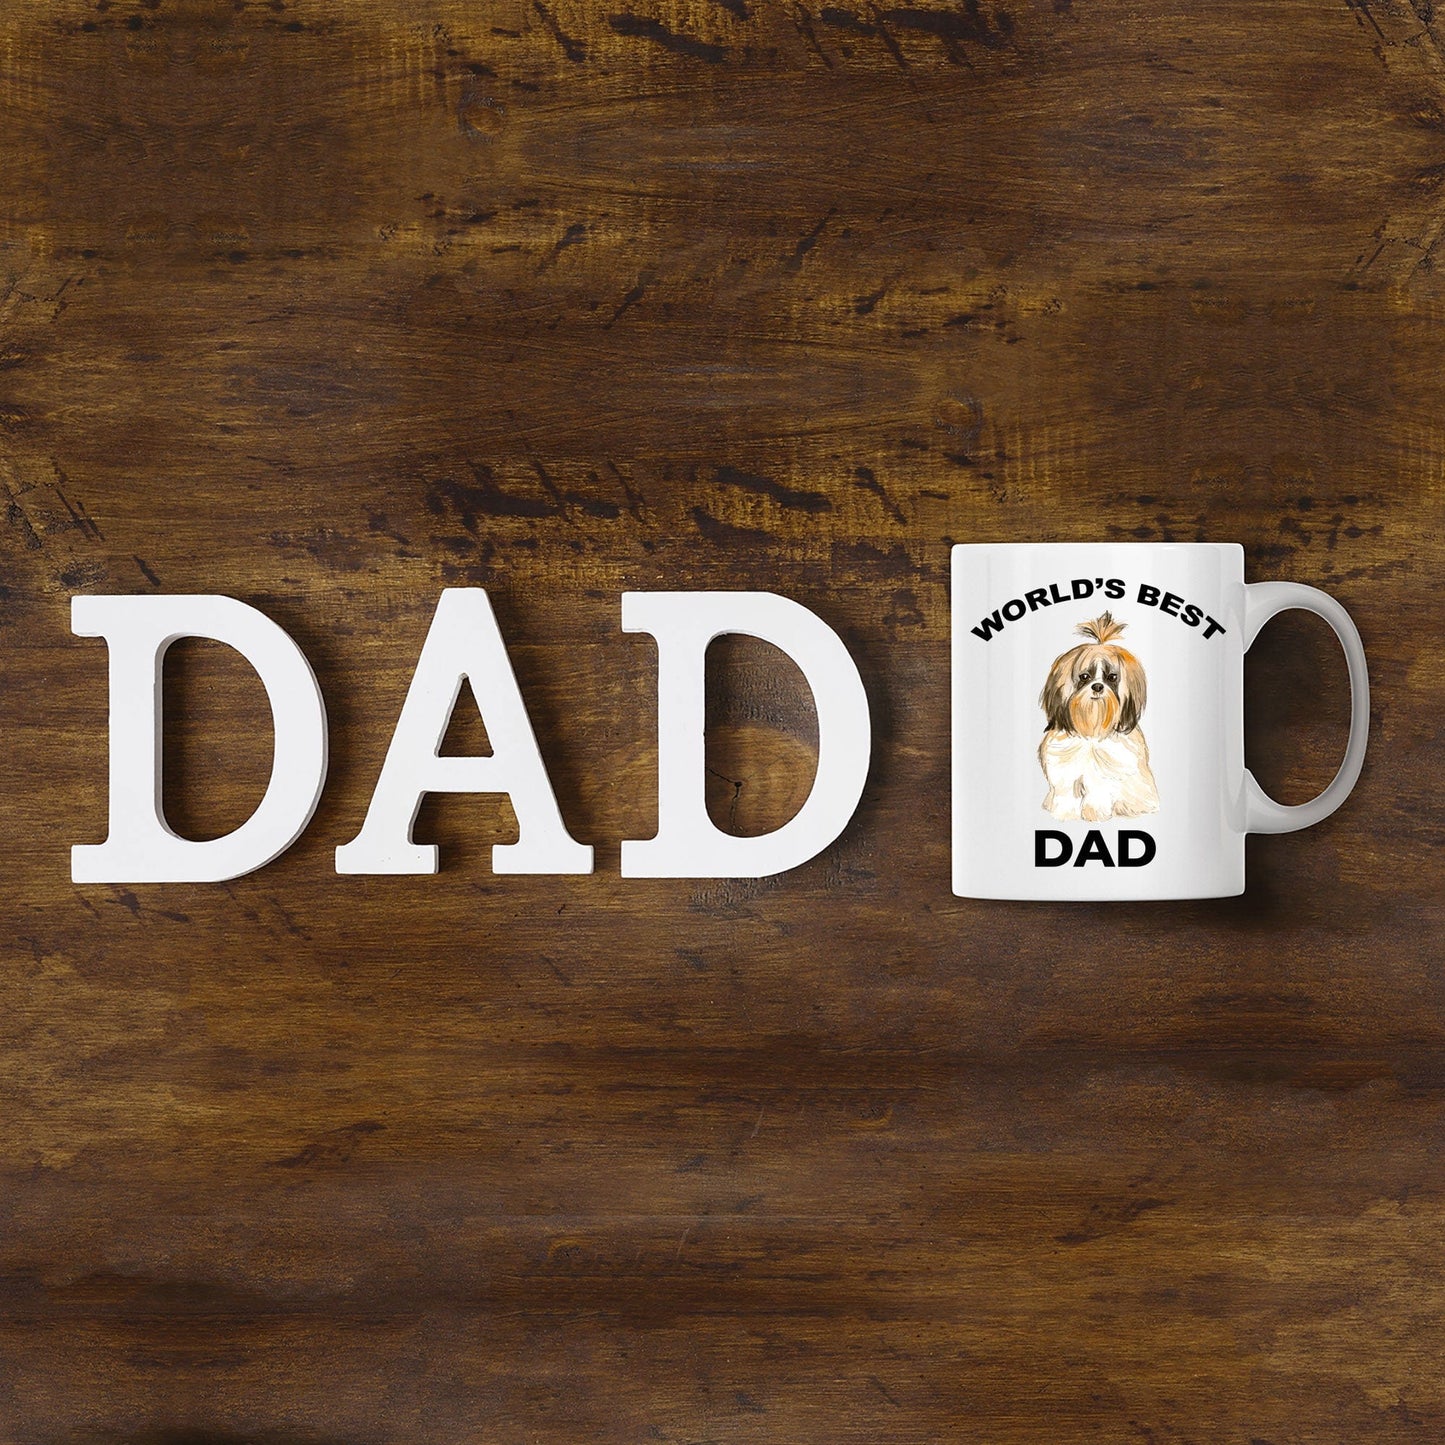 Shih Tzu Best Dog Dad Coffee Mug